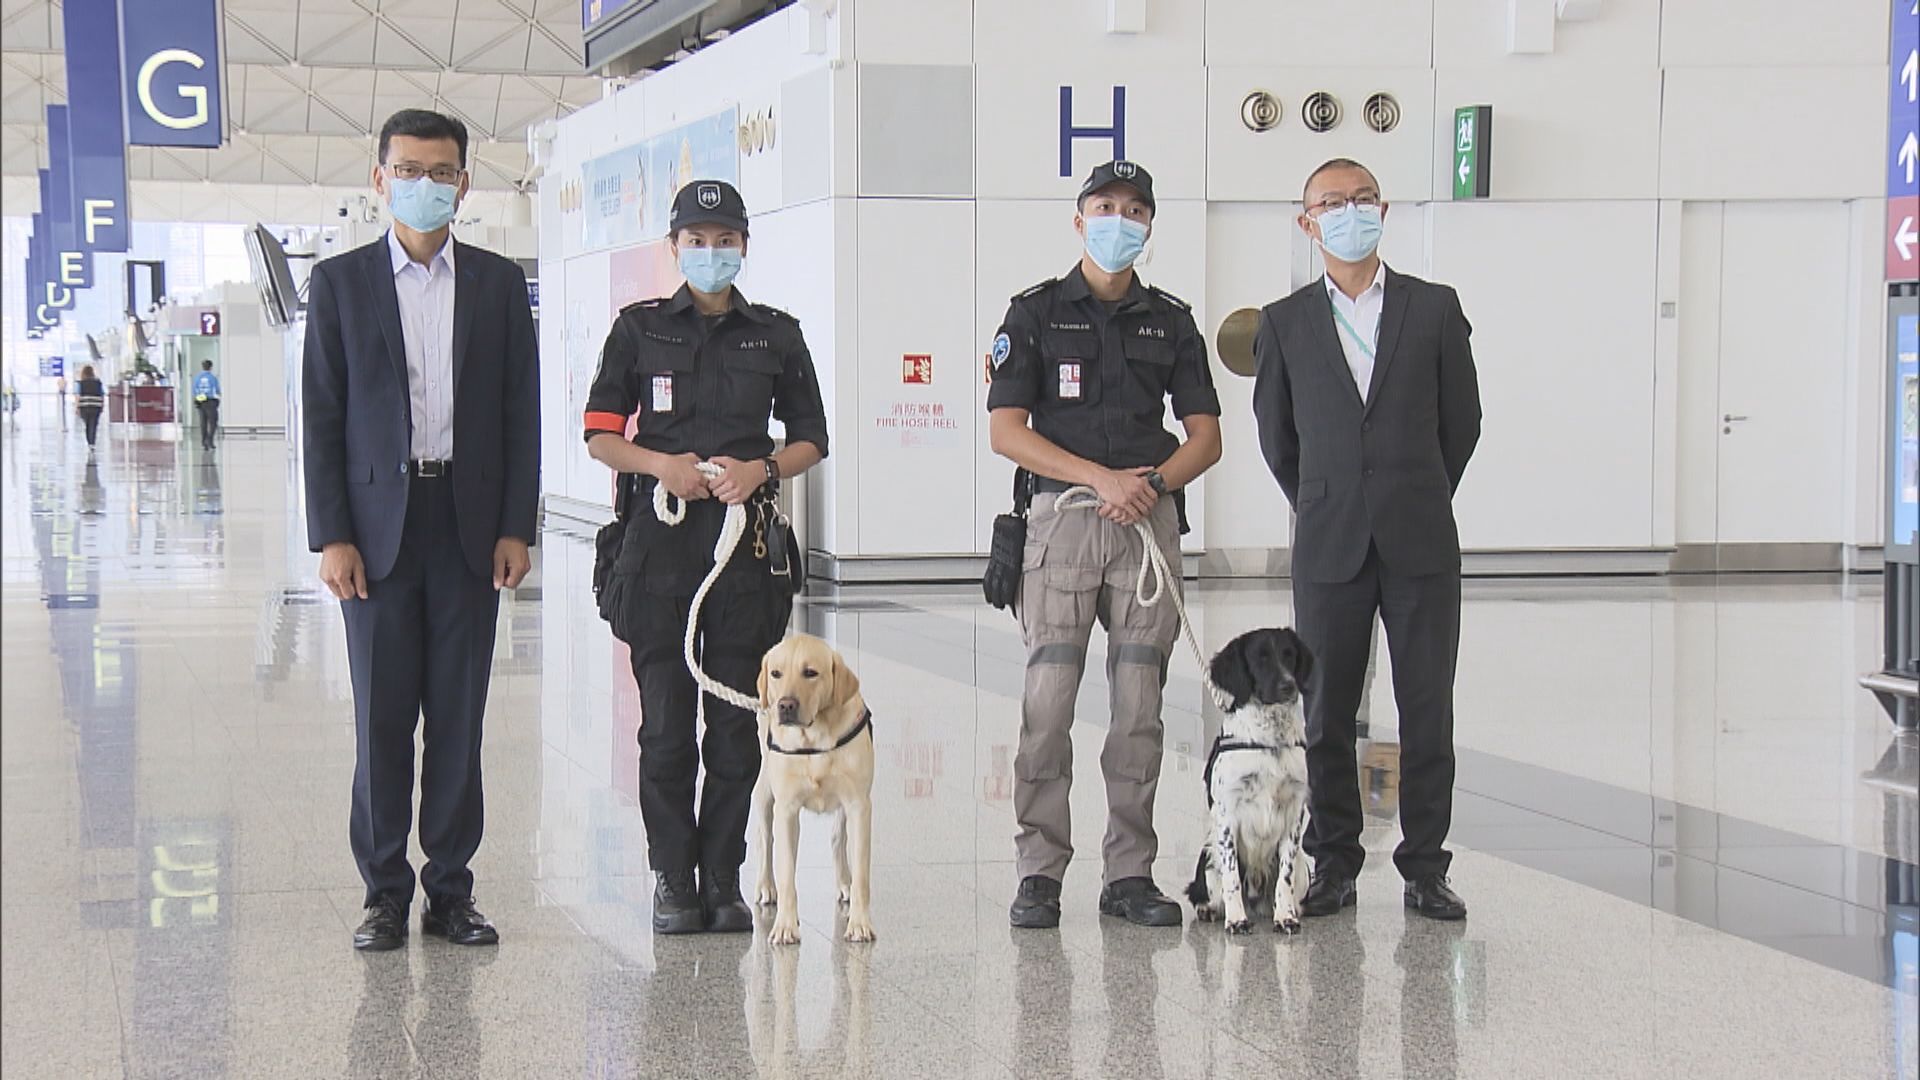 機場保安公司成立搜索犬隊應對保安風險